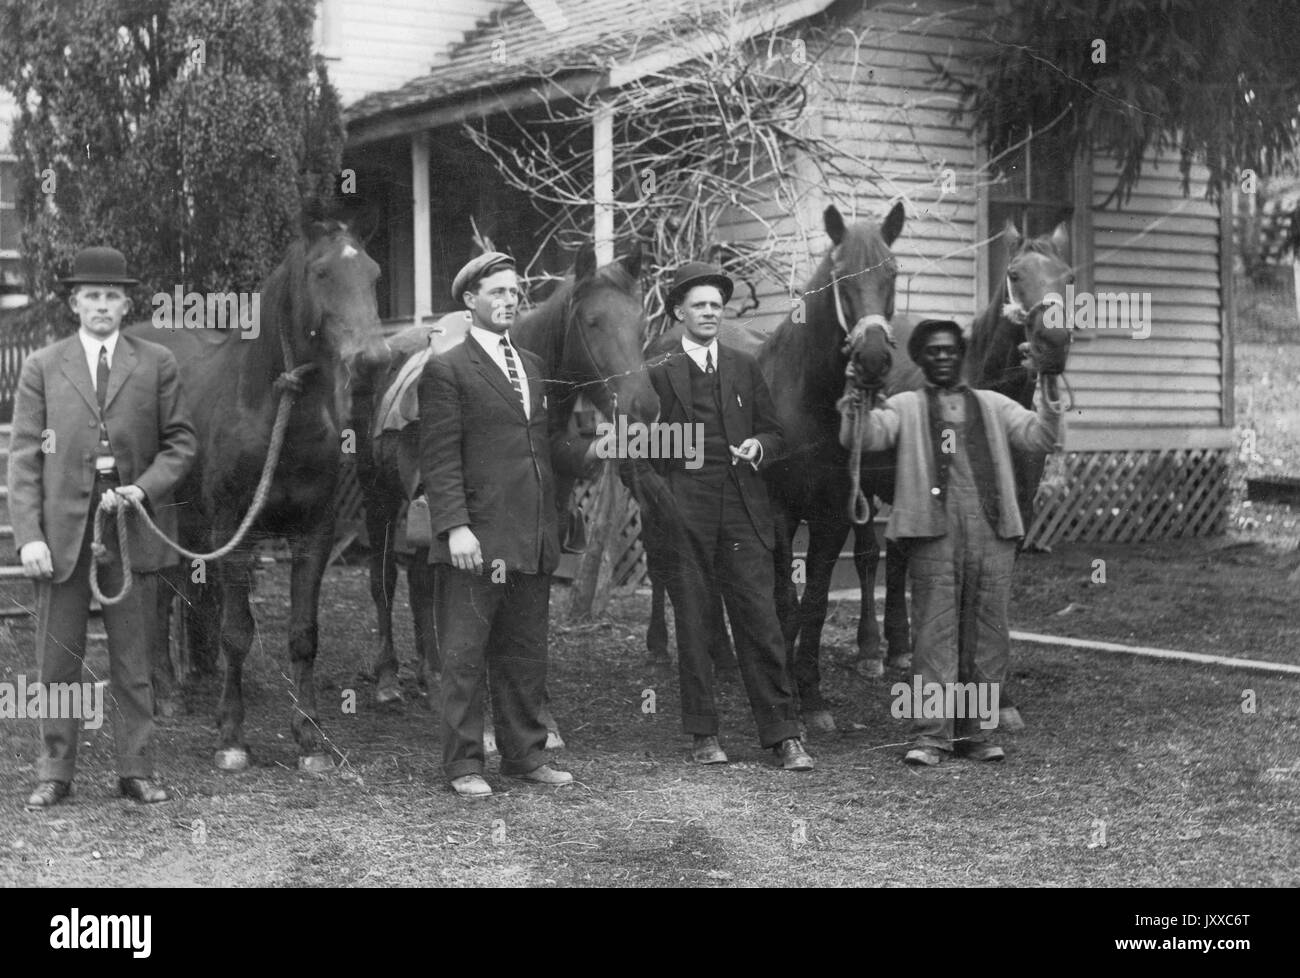 Volle Länge stehen Portraits von drei weißen Männern und einer afrikanischen amerikanischen Mann mit vier Pferden, drei weiße Männer mit dunklen Anzügen, Krawatten, Hüte, afrikanische amerikanische Mann mit dunklen Jacke, Overalls und Hut, stehen vor dem Haus und Bäume, neutrale Ausdrücke, 1920. Stockfoto